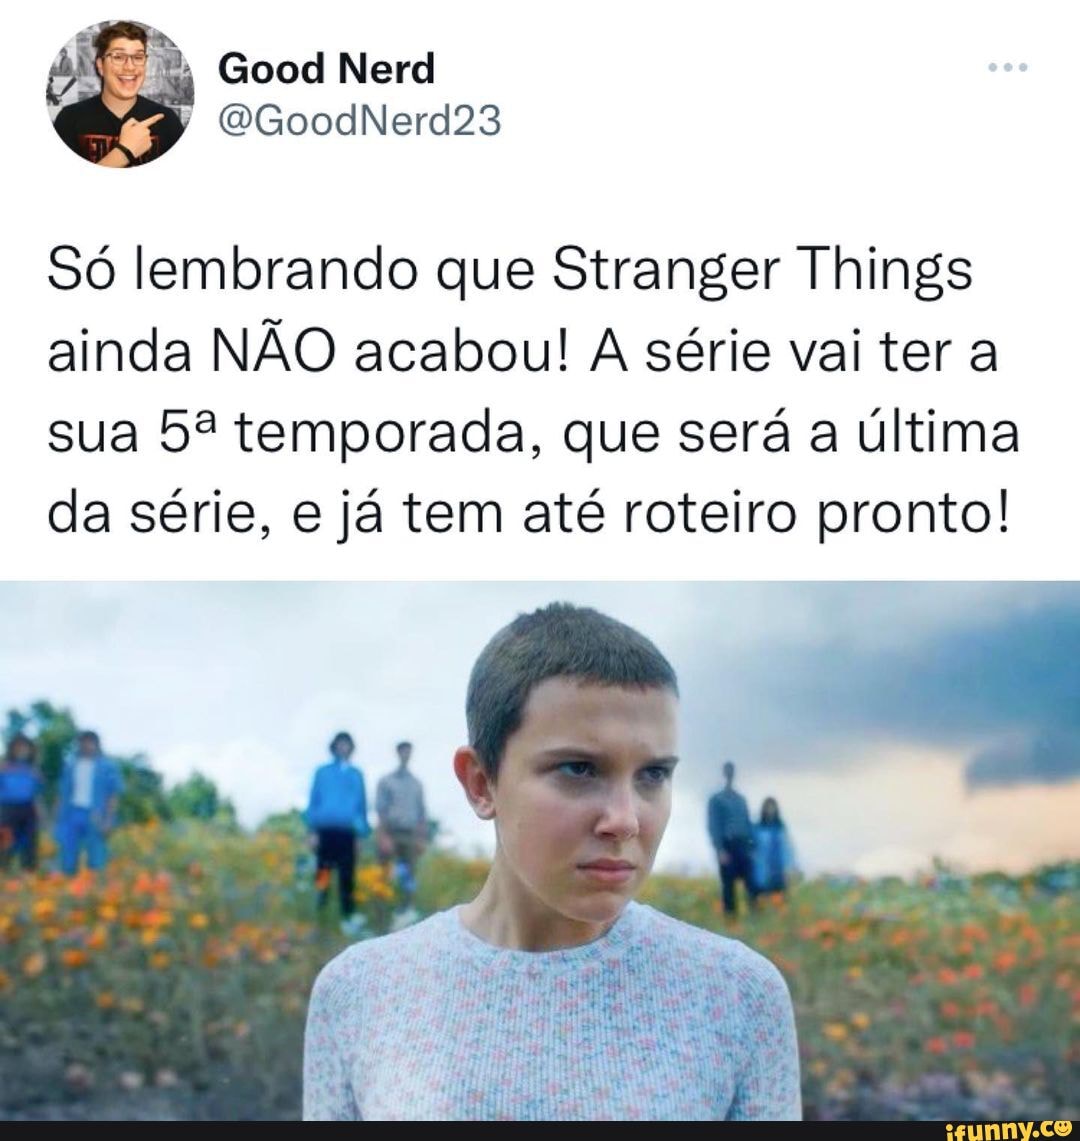 Stranger Things: 5ª temporada da série será a última